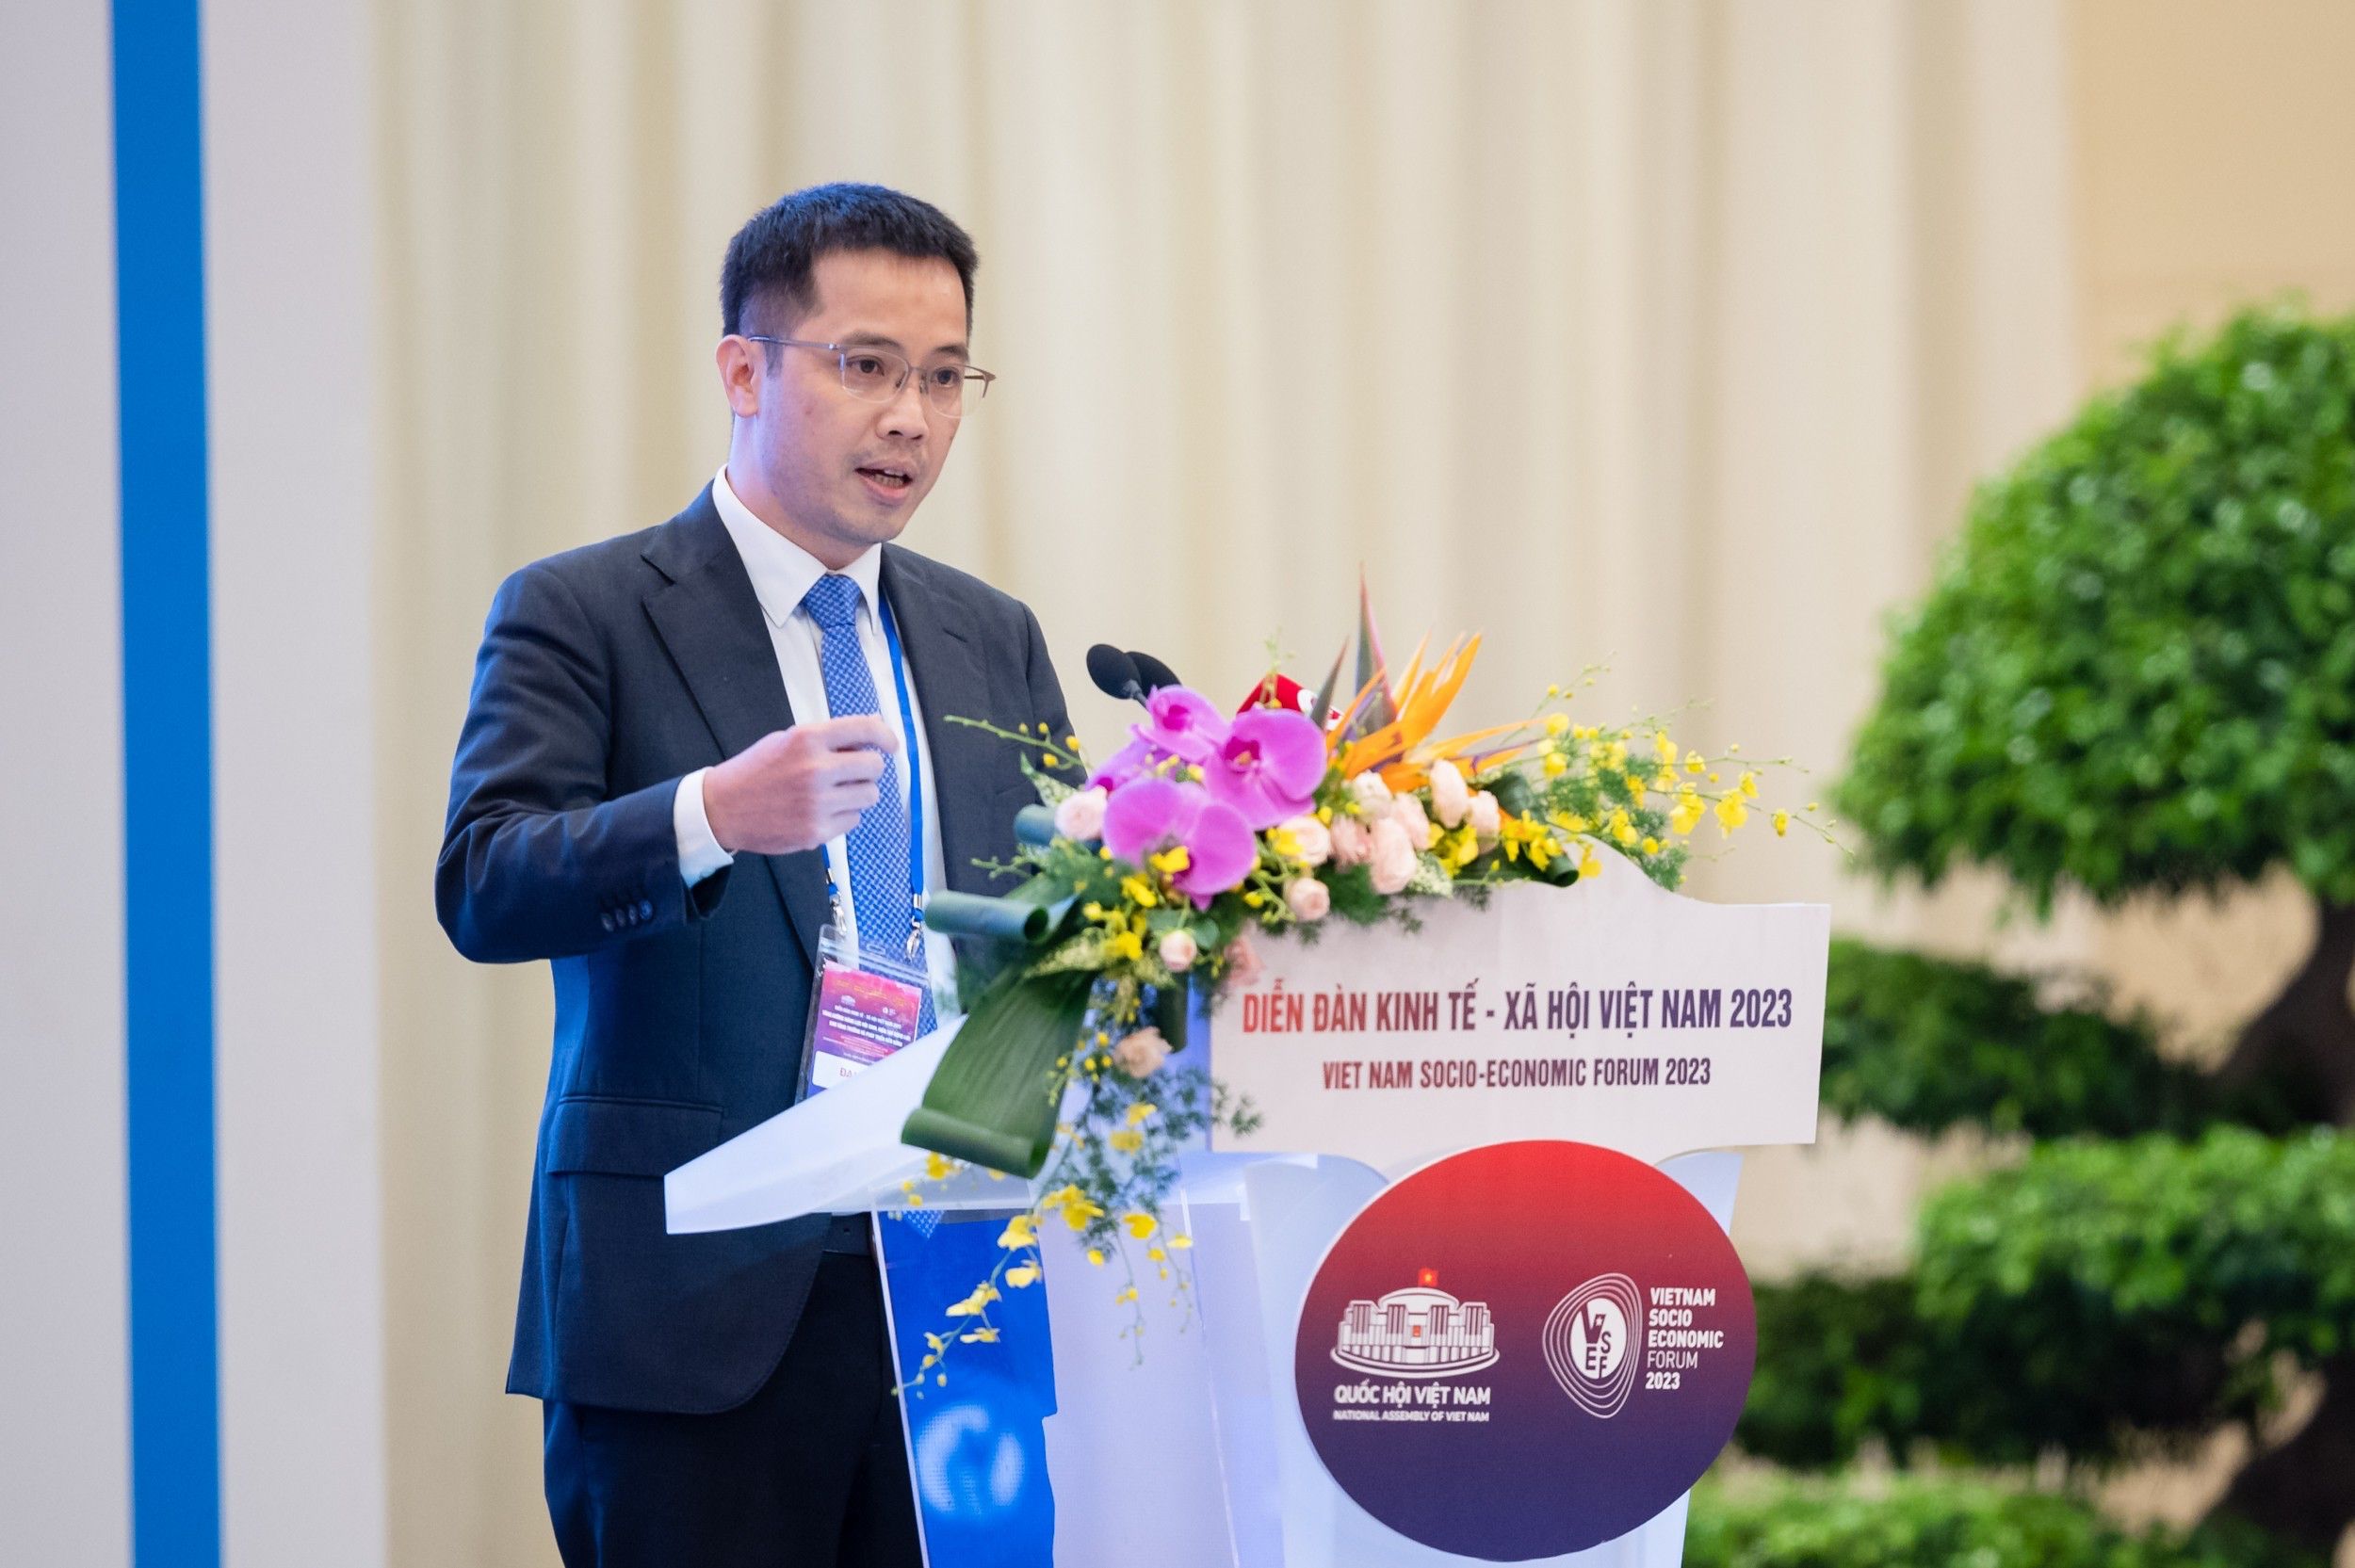 Ông Đậu Anh Tuấn - Phó Tổng Thư ký, Trưởng Ban Pháp chế, Liên đoàn Thương mại và Công nghiệp Việt Nam VCCI trình bày tham luận “Tháo gỡ các rào cản, khó khăn cho doanh nghiệp Việt Nam”